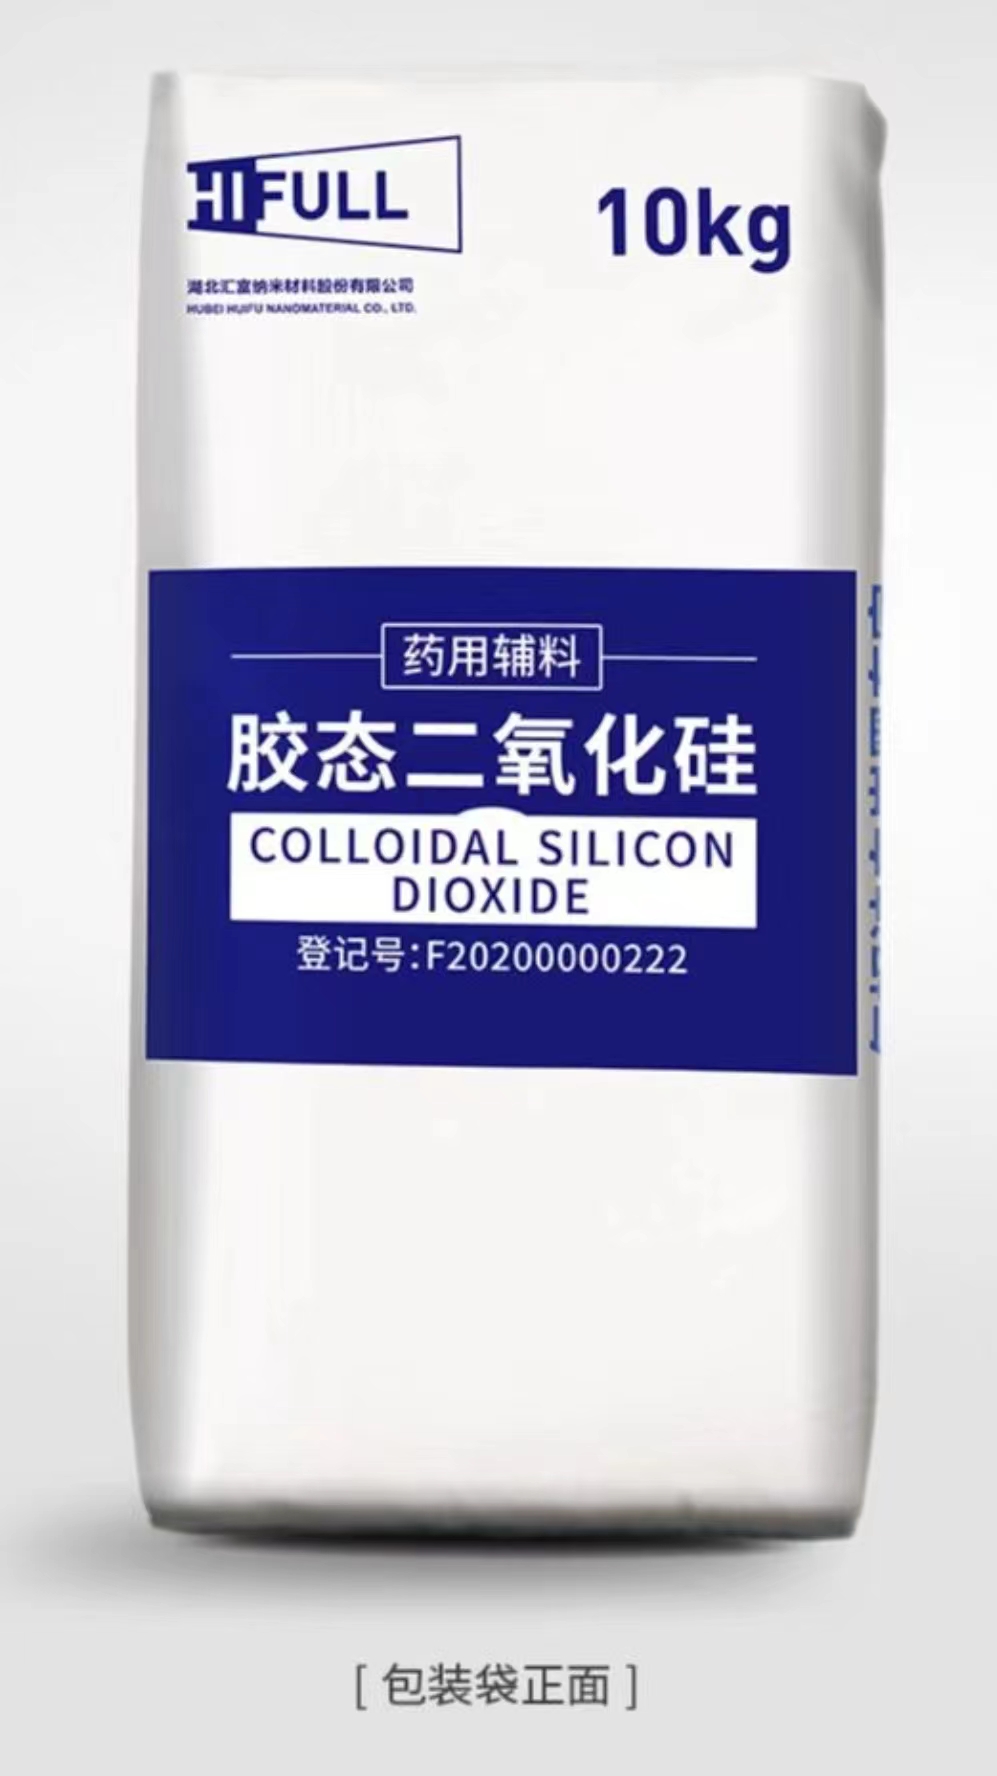 Colloidal Silicon Dioxide胶态二氧化硅